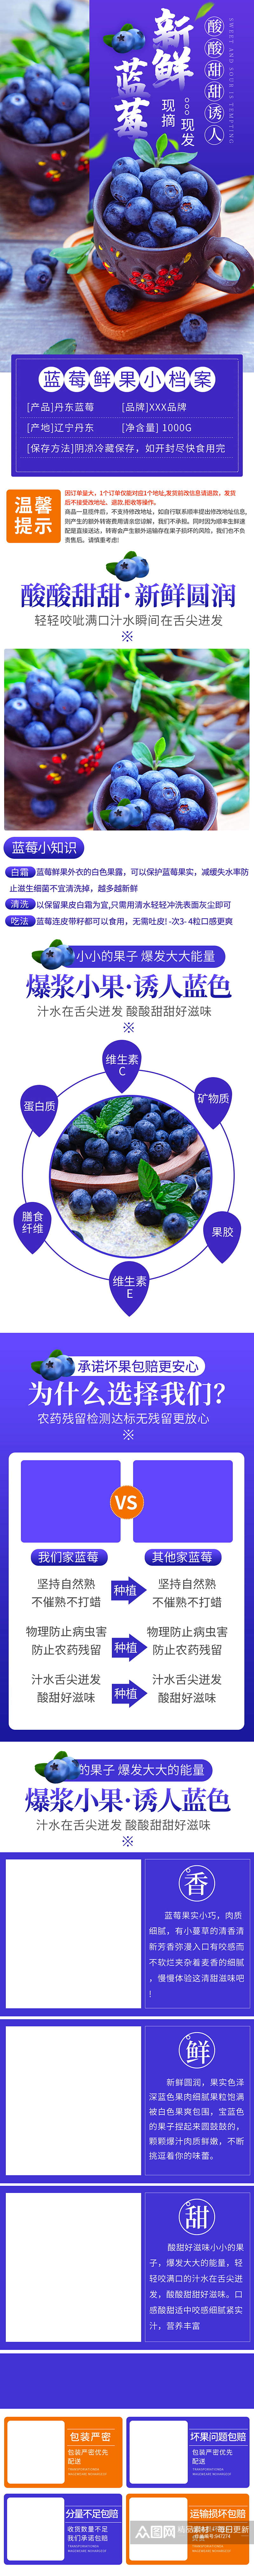 蔬菜水果类蓝莓水果详情页素材